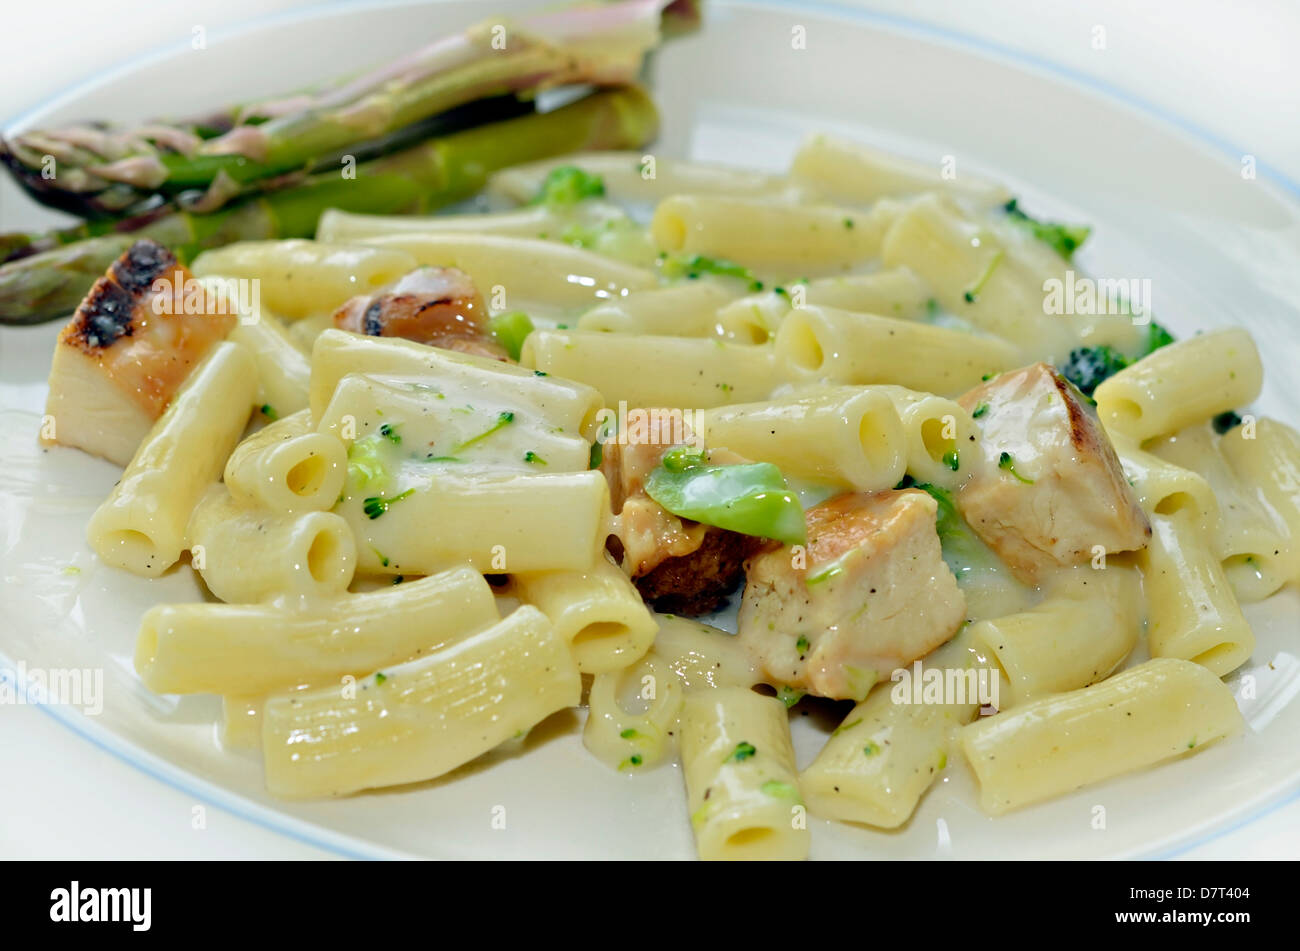 Un repas de poulet, pâtes et brocolis en sauce Alfredo avec des produits bio frais les asperges sur une assiette. Banque D'Images